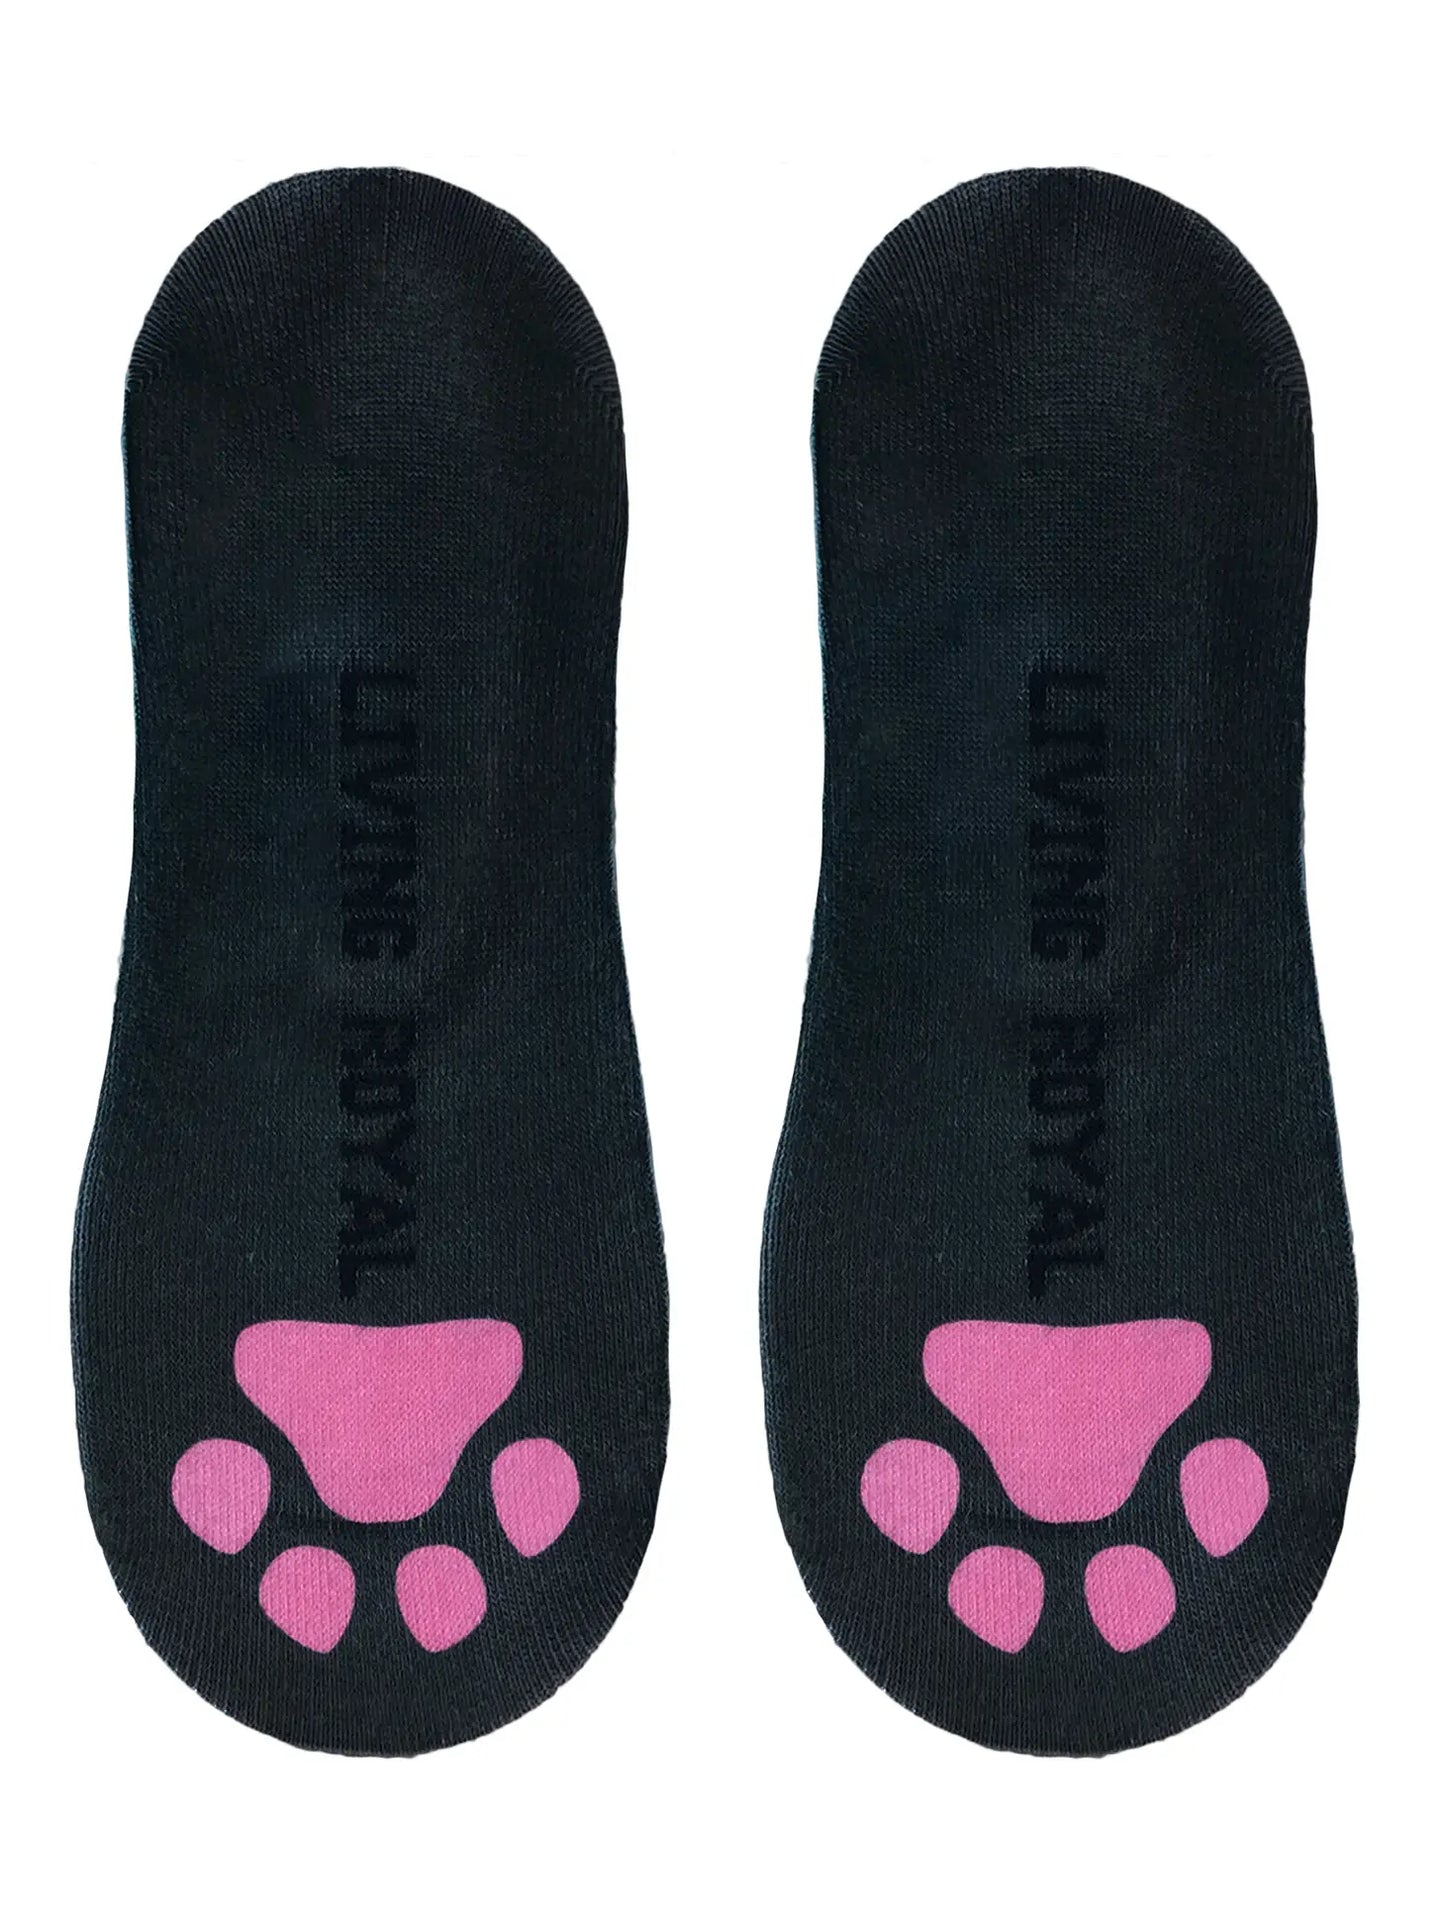 Terrier Liner Socks